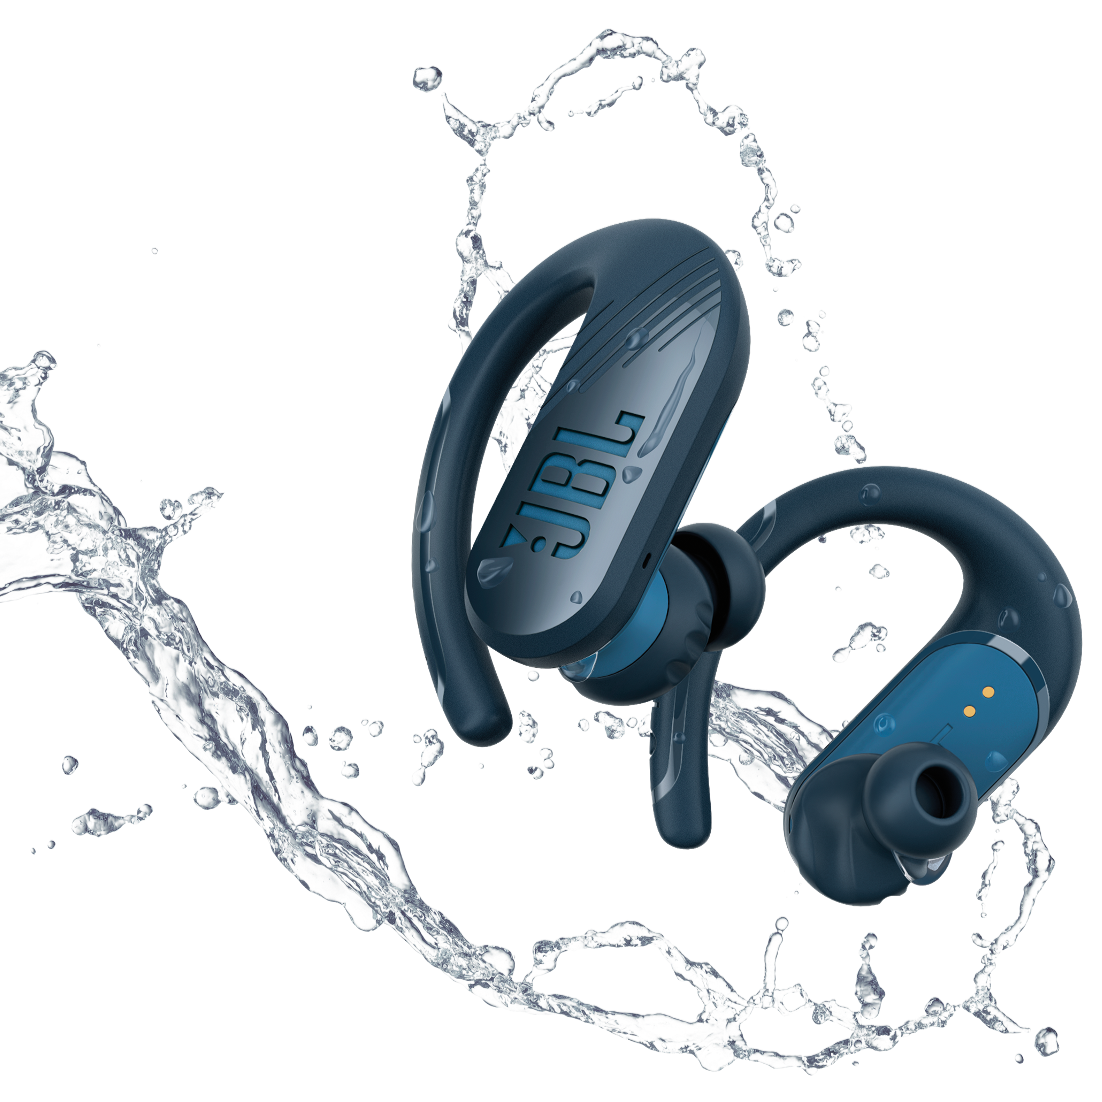 Audífonos Inalámbricos JBL Endurance Peak II | IP67 | Bluetooth | Color Azul - Multimax